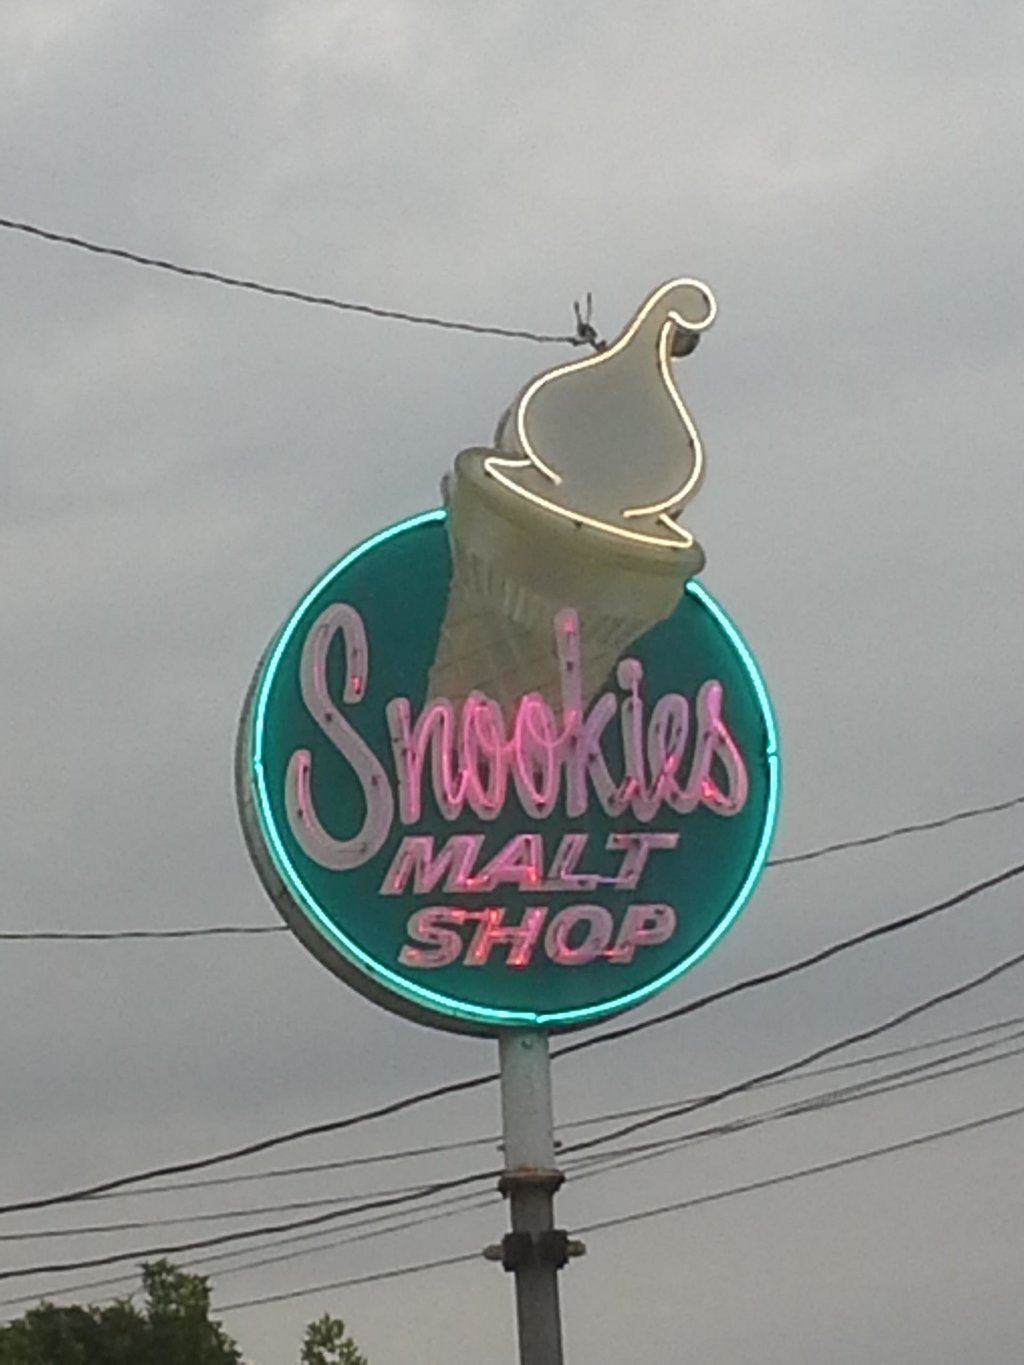 Snookies Malt Shop